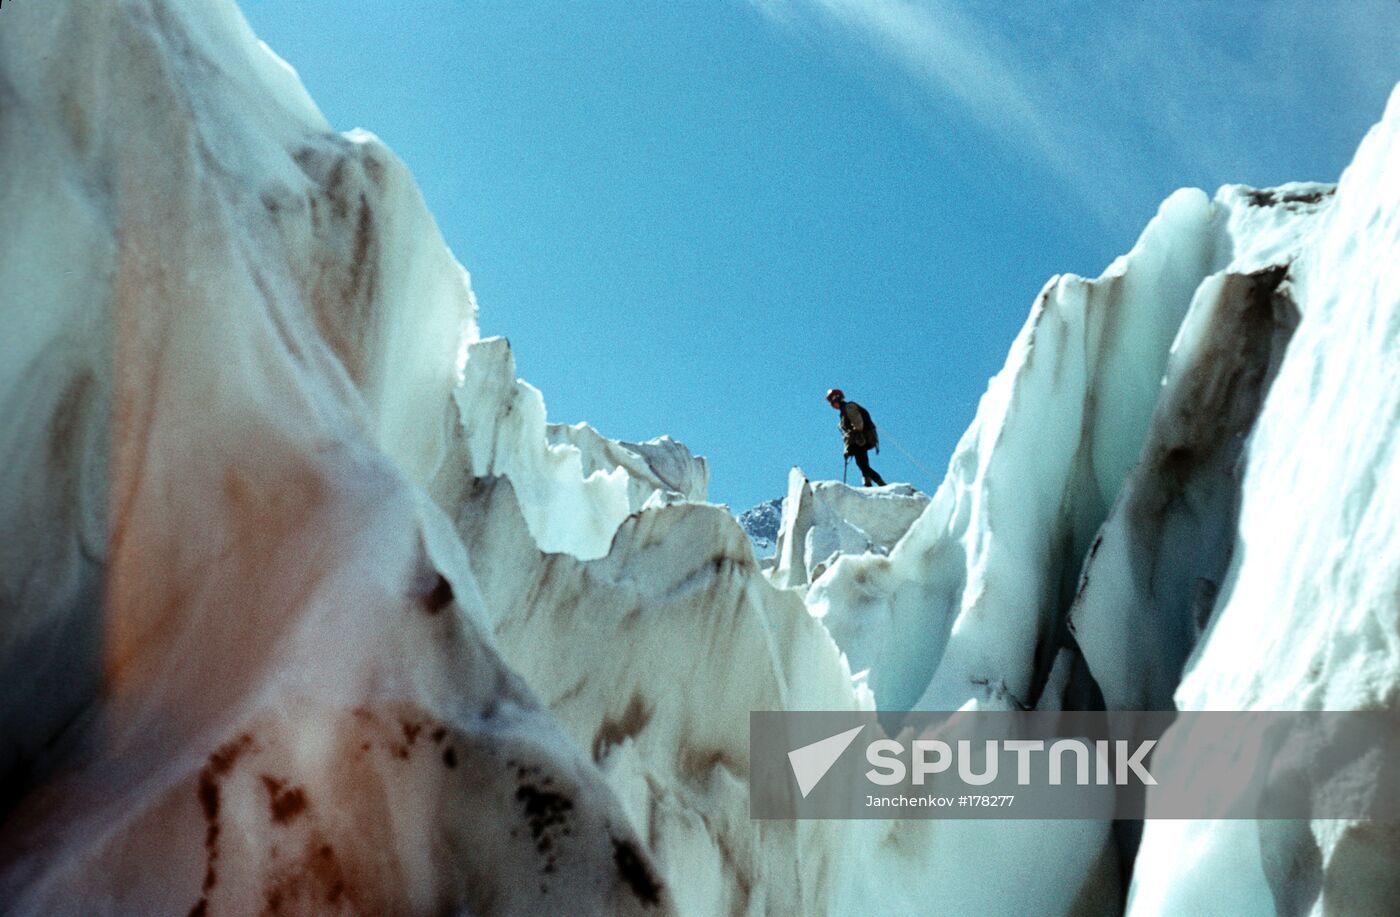 Kabarda-Balkaria North Caucasus glacier mountaineer 